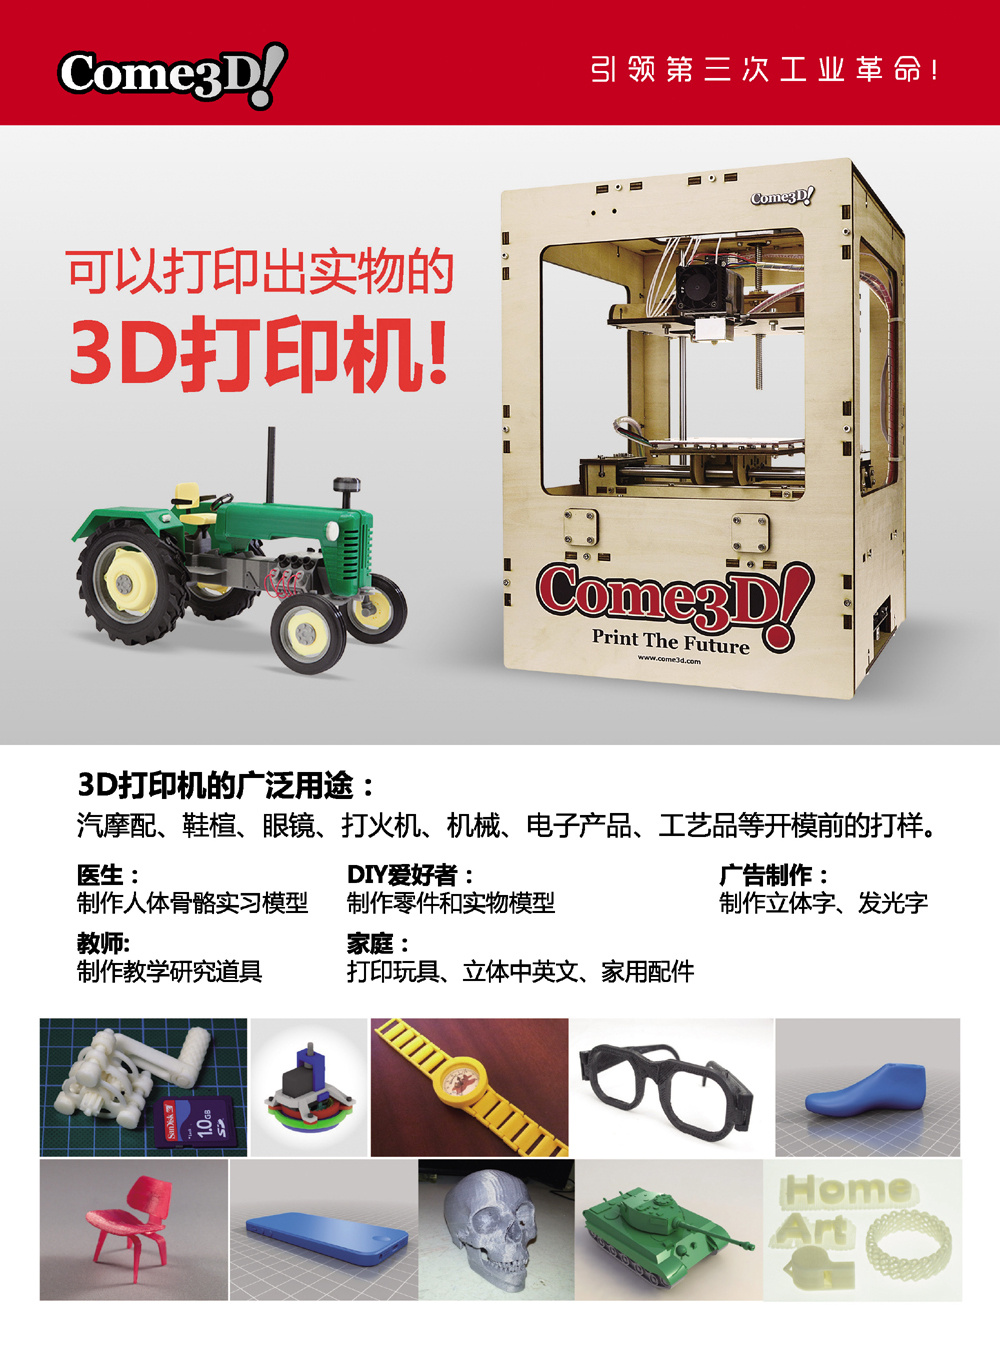 3D打印机_3D打印服务_开源3D技术论坛_Are3D.com_耗材_http://www.Are3D.com